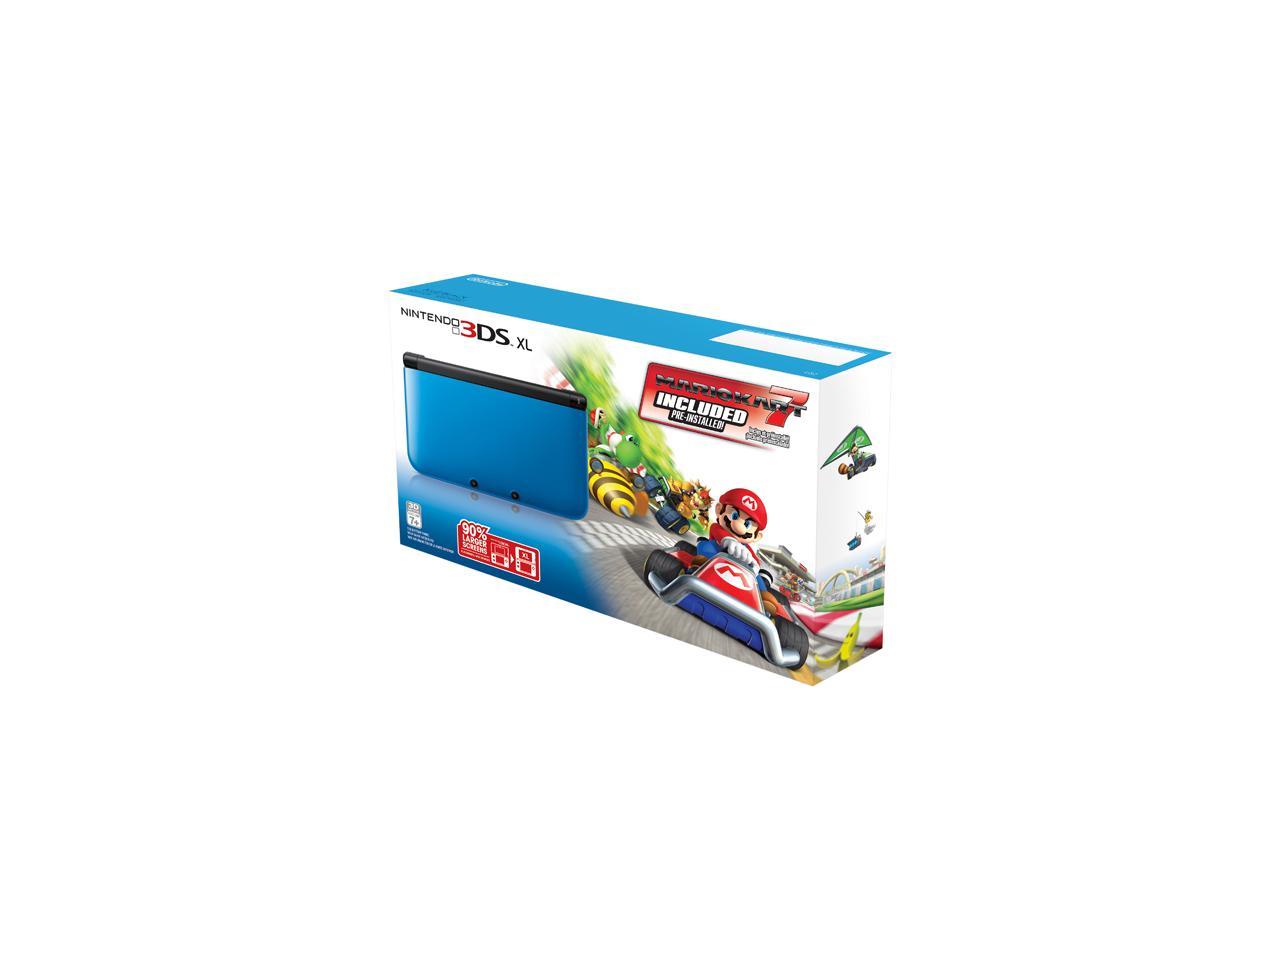 Nintendo 3ds Xl Blue Black System Bundle W Mario Kart 7 Newegg Com